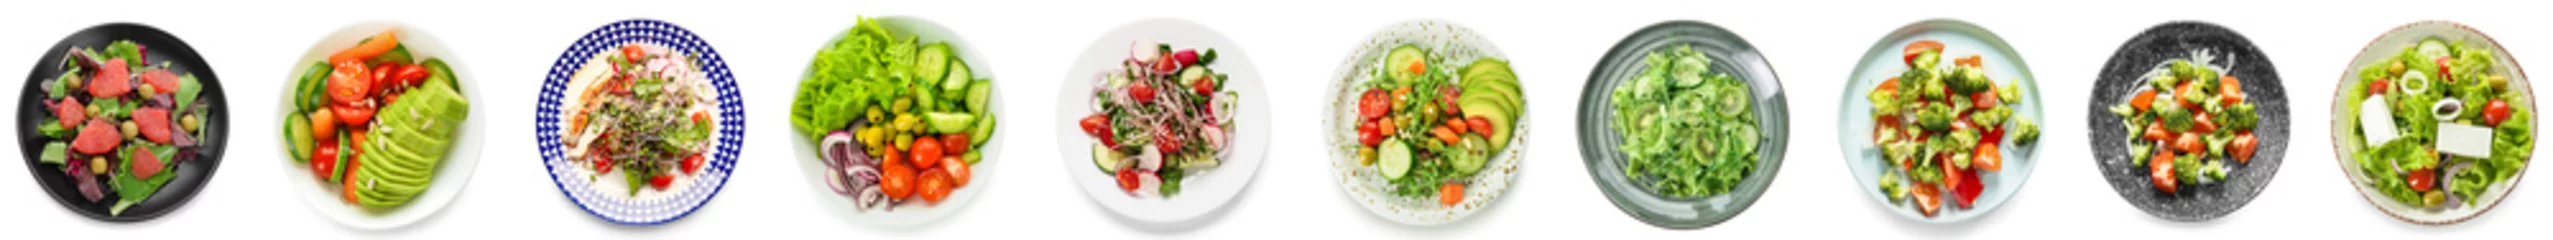 Meubelstickers Verse groenten Set van smakelijke salades met groenten op witte achtergrond, bovenaanzicht